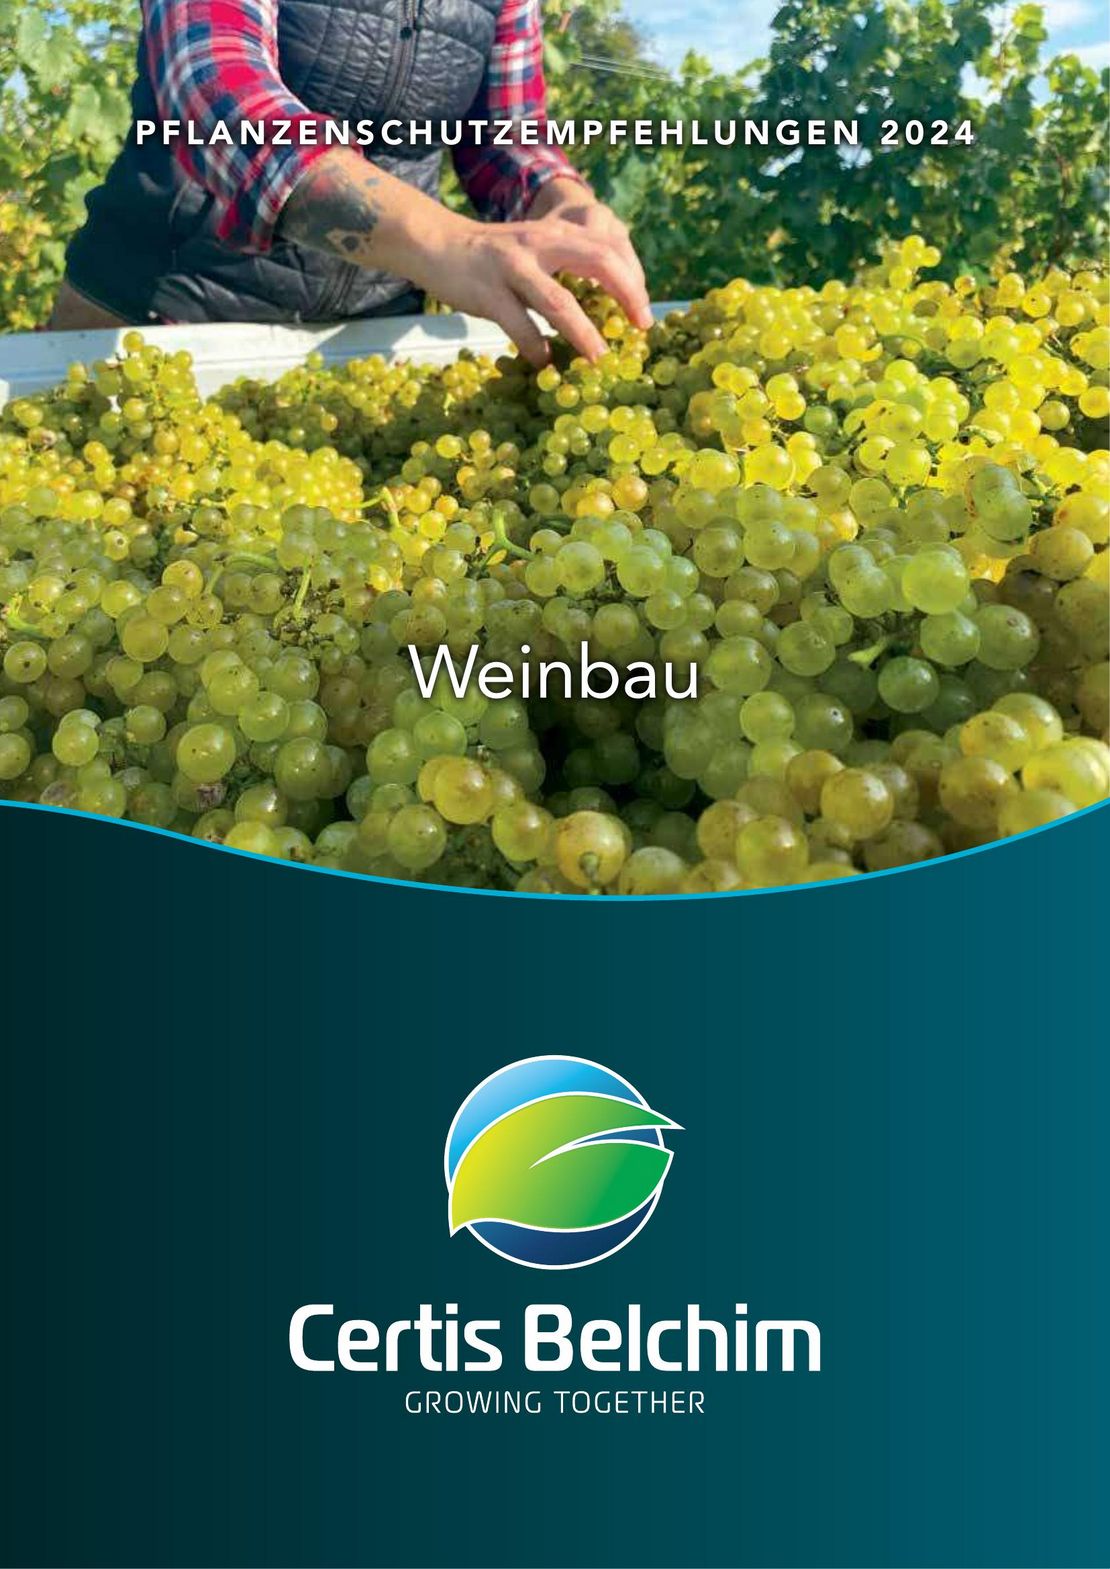 Pflanzenschutzempfehlung Weinbau 2024